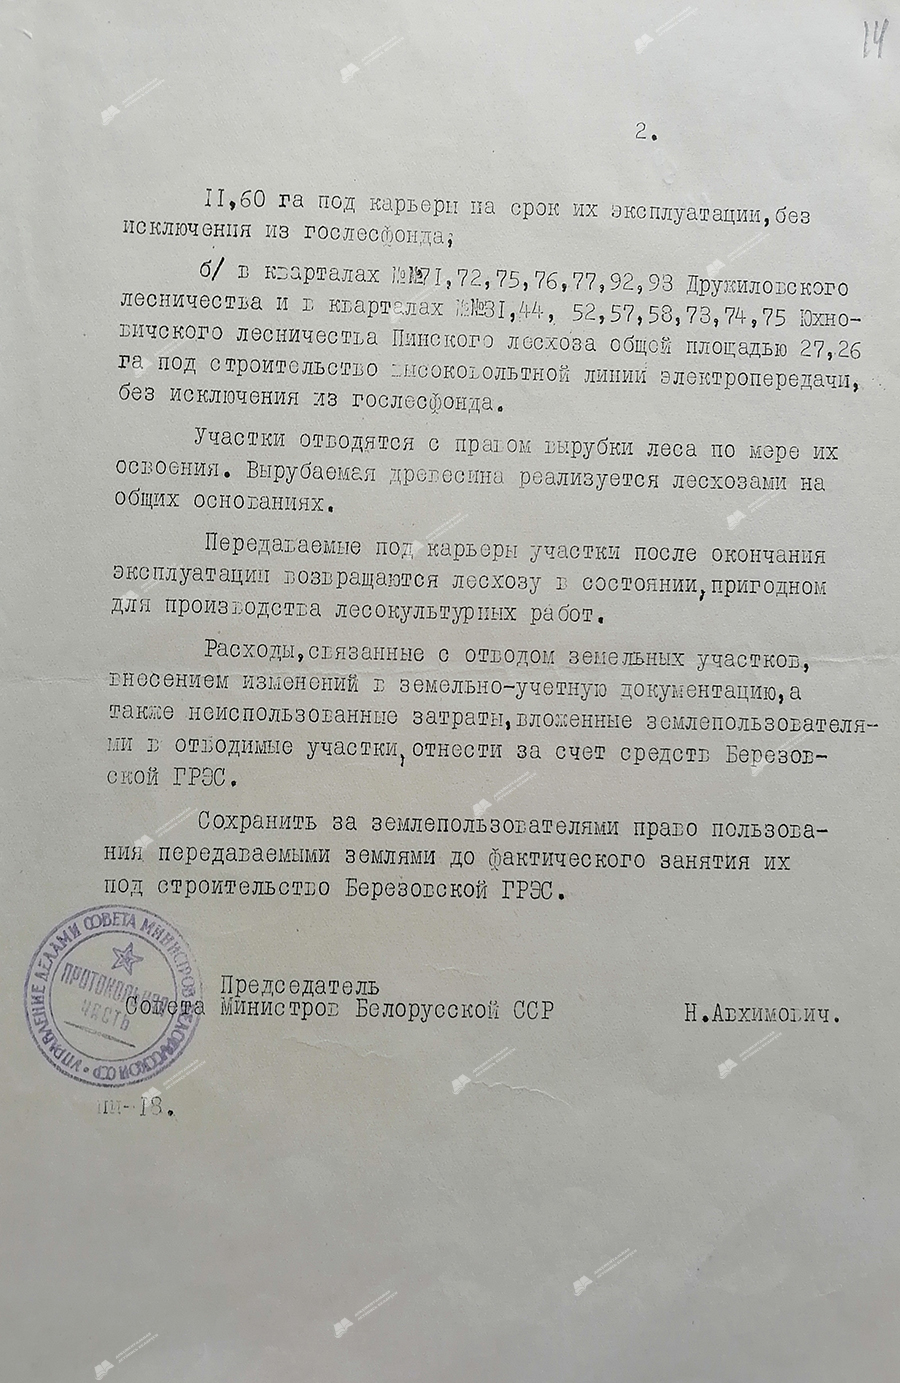 Распоряжение № 1782-р Совета Министров БССР  об отводе под строительство Березовской ГРЭС земельных участков-с. 1